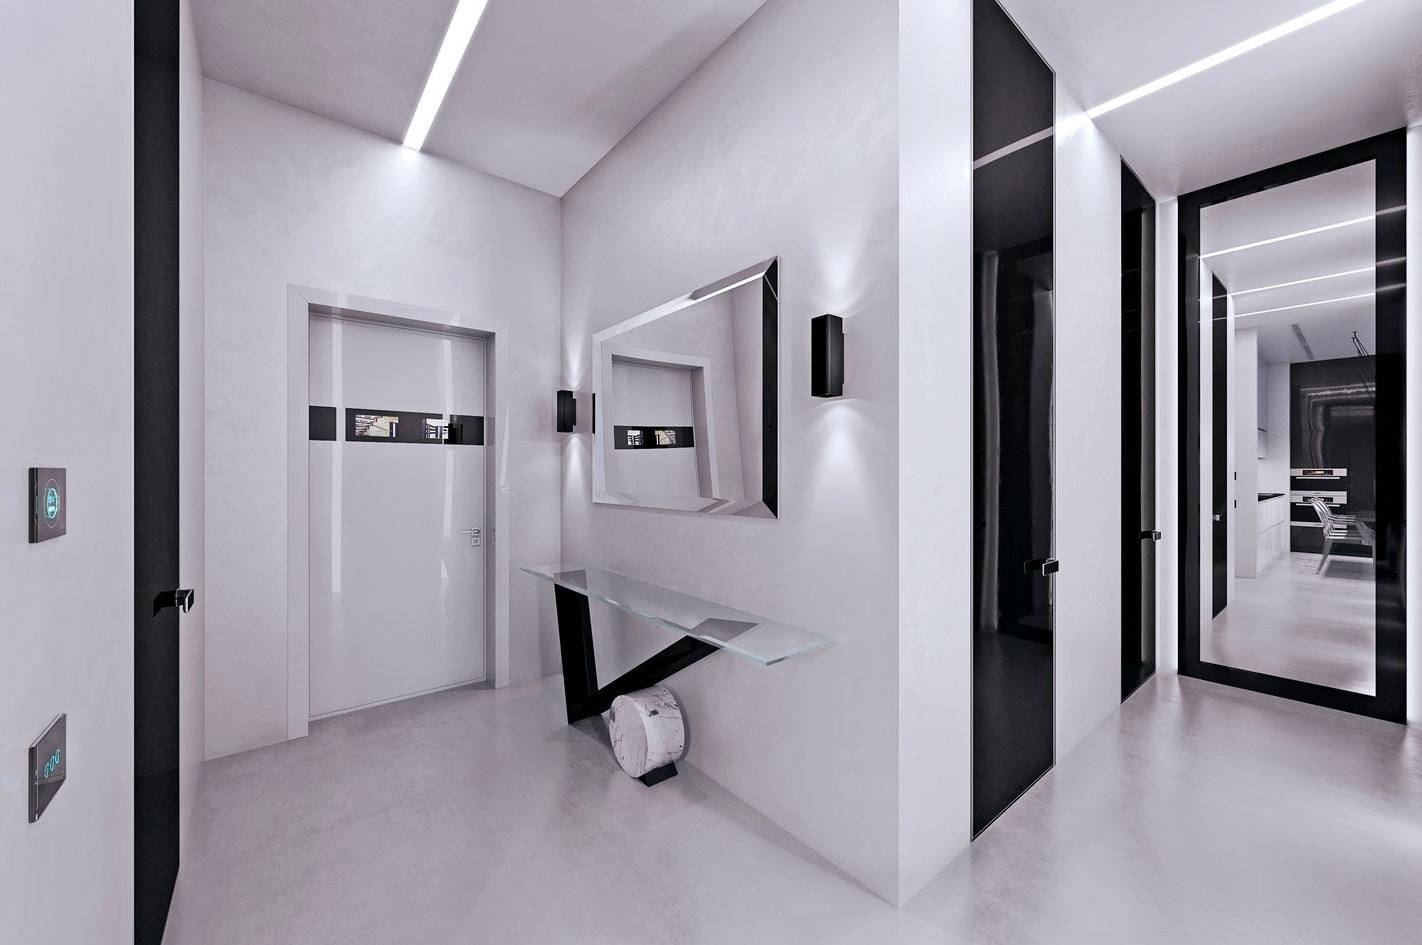 Стиль хай-тек в интерьере (75 фото) - идеи дизайна комнат, главные особенности